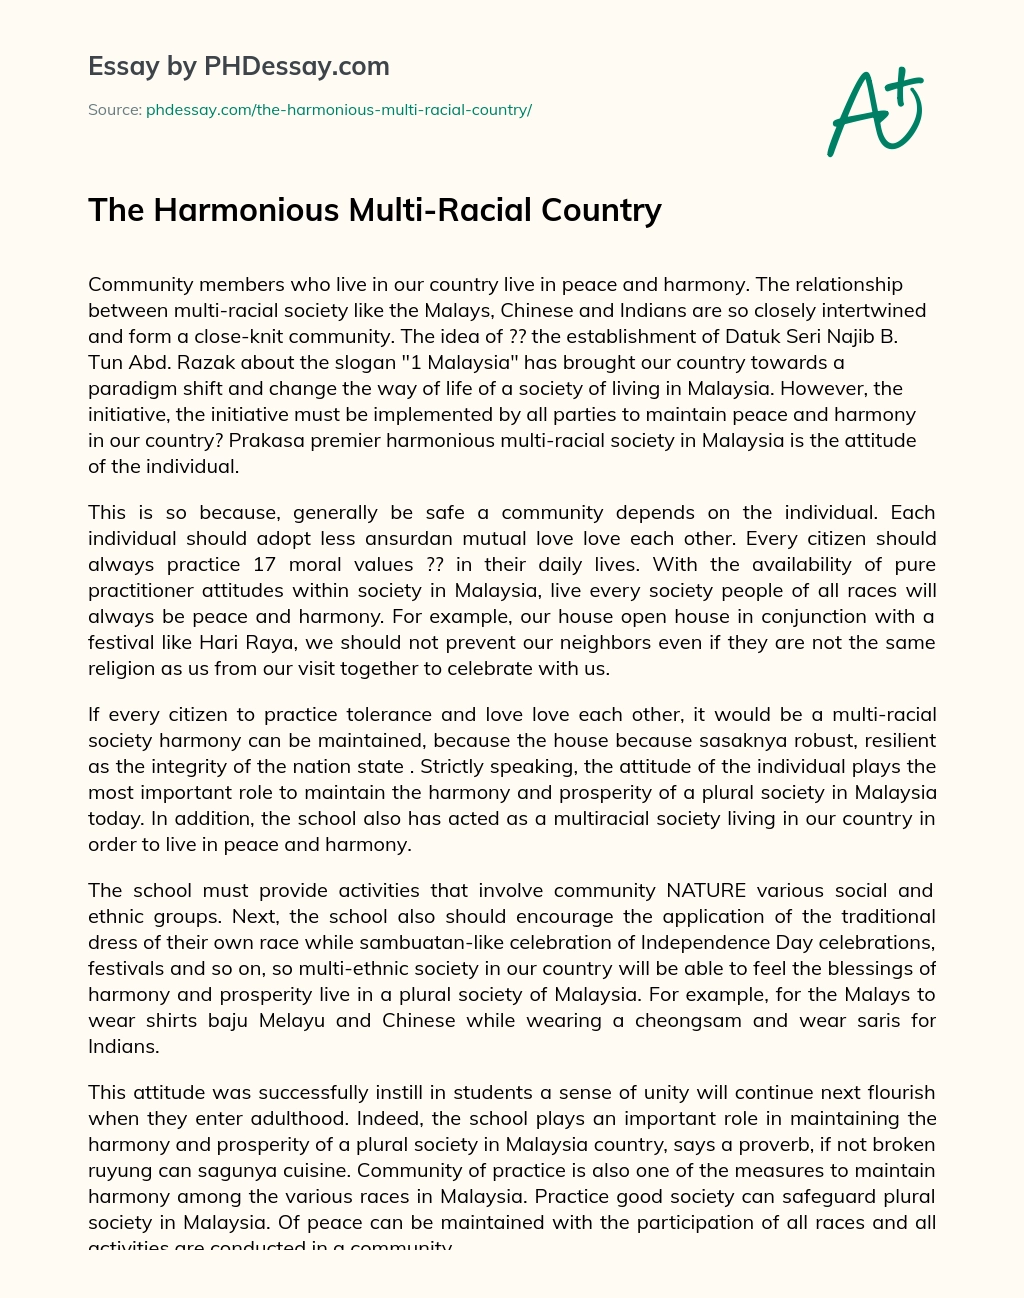 The Harmonious Multi-Racial Country essay